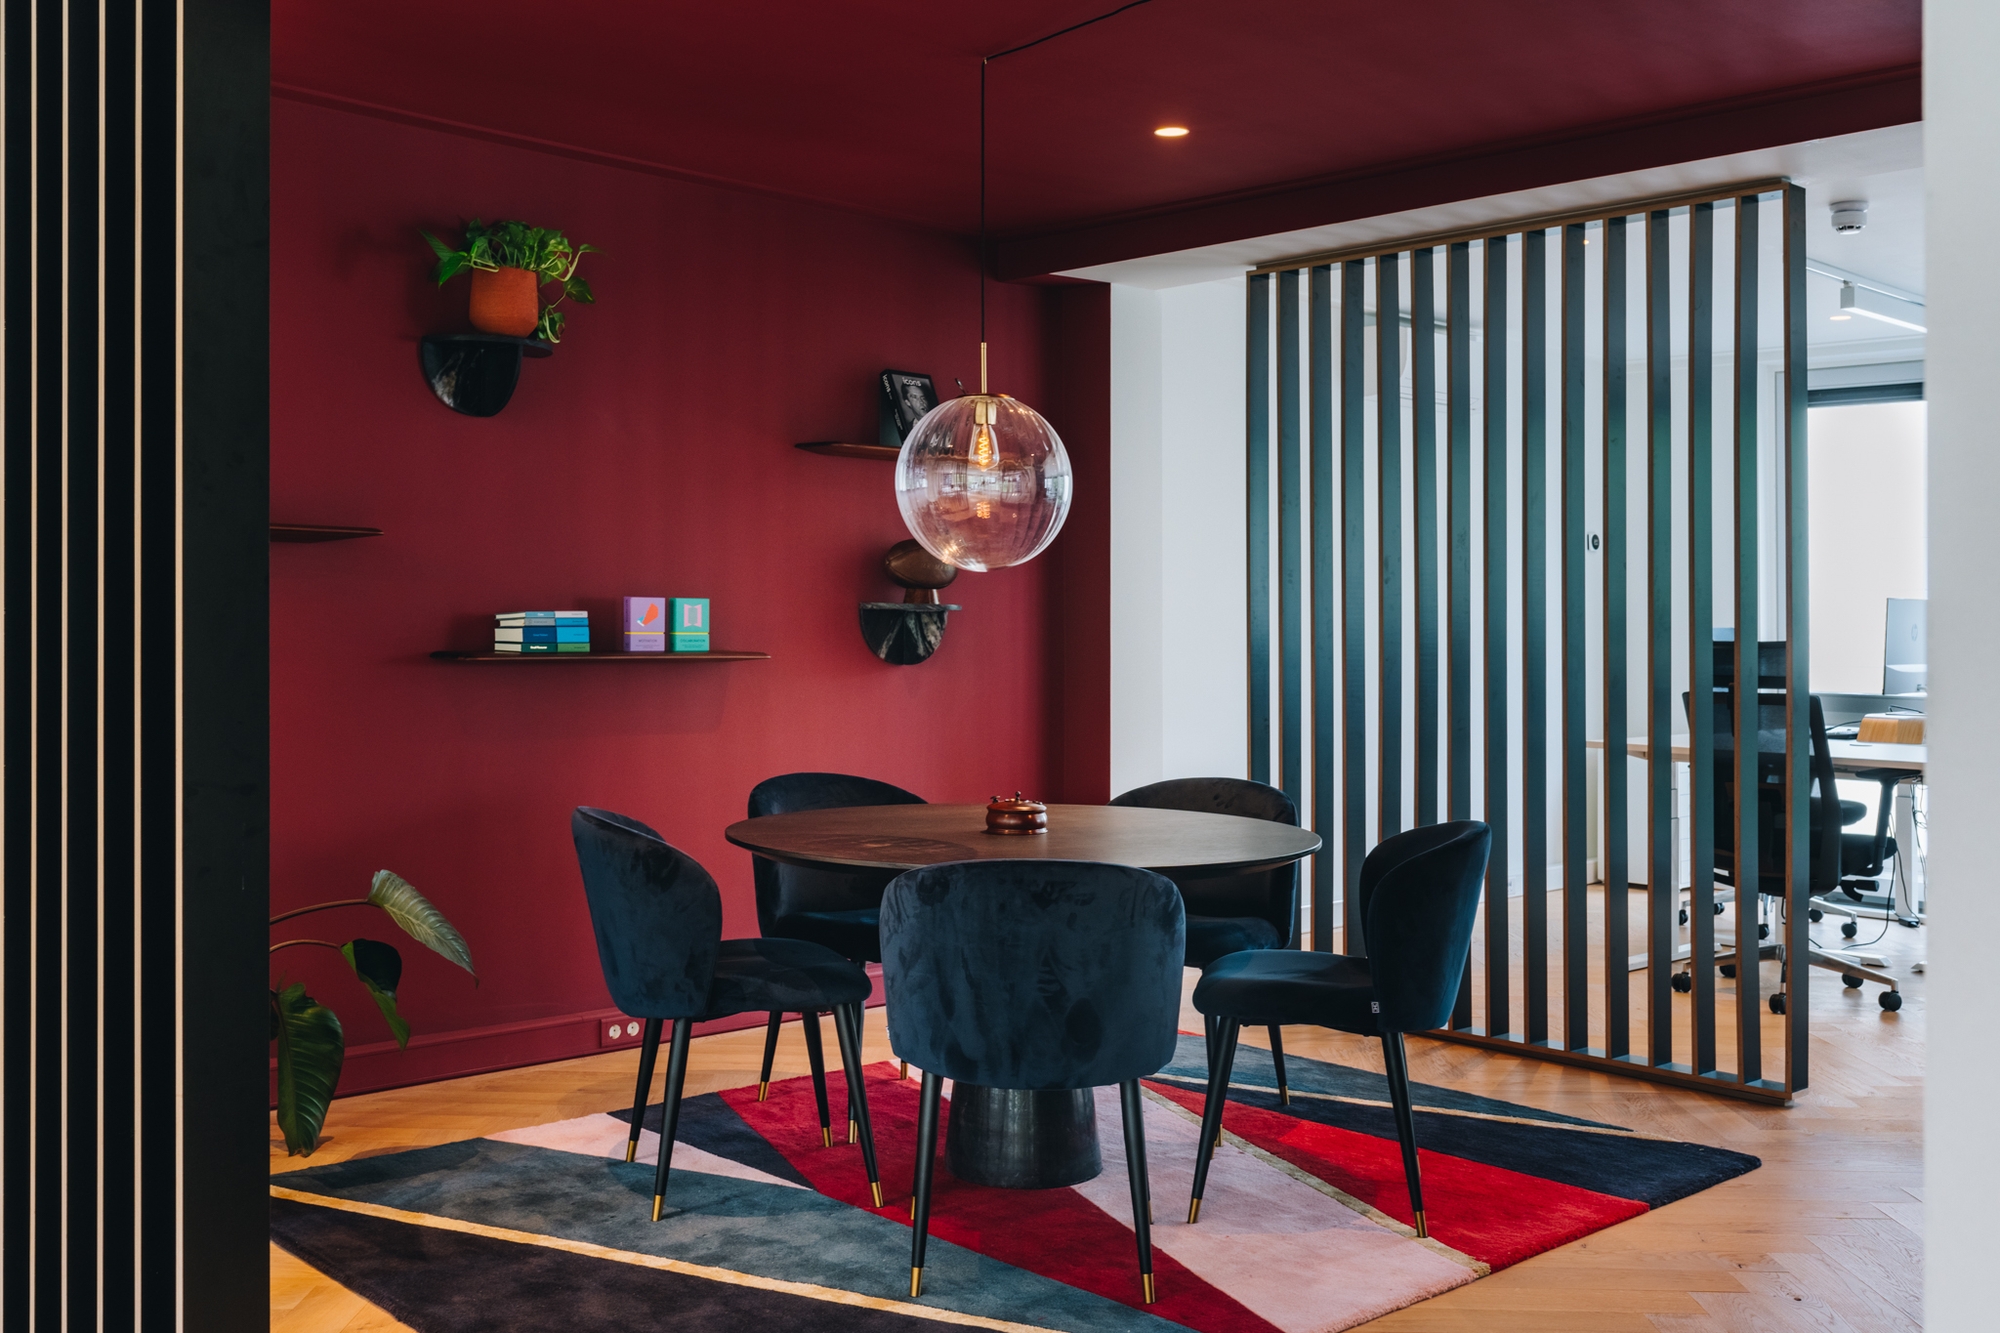 图片[6]|MR MARVIS办公室——阿姆斯特丹|ART-Arrakis | 建筑室内设计的创新与灵感